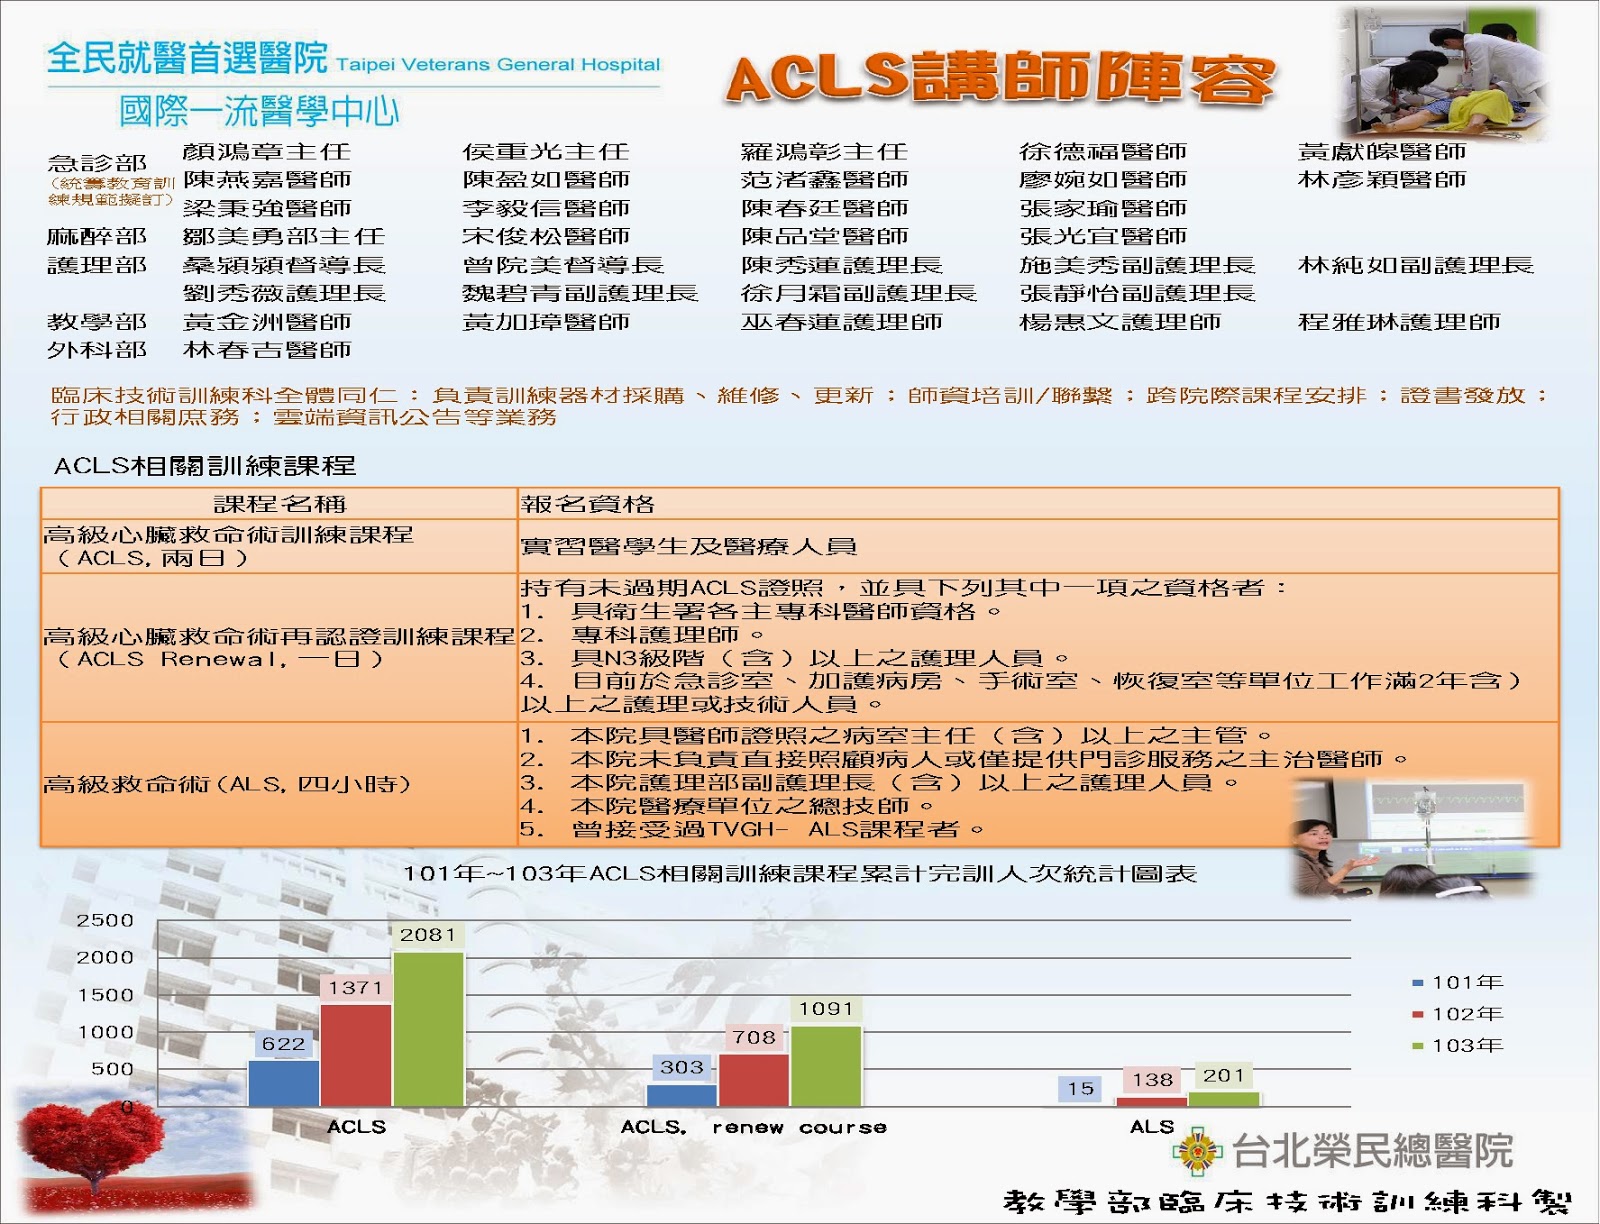 臺北榮總教學部臨床技術訓練科 Acls相關訓練課程宣傳海報